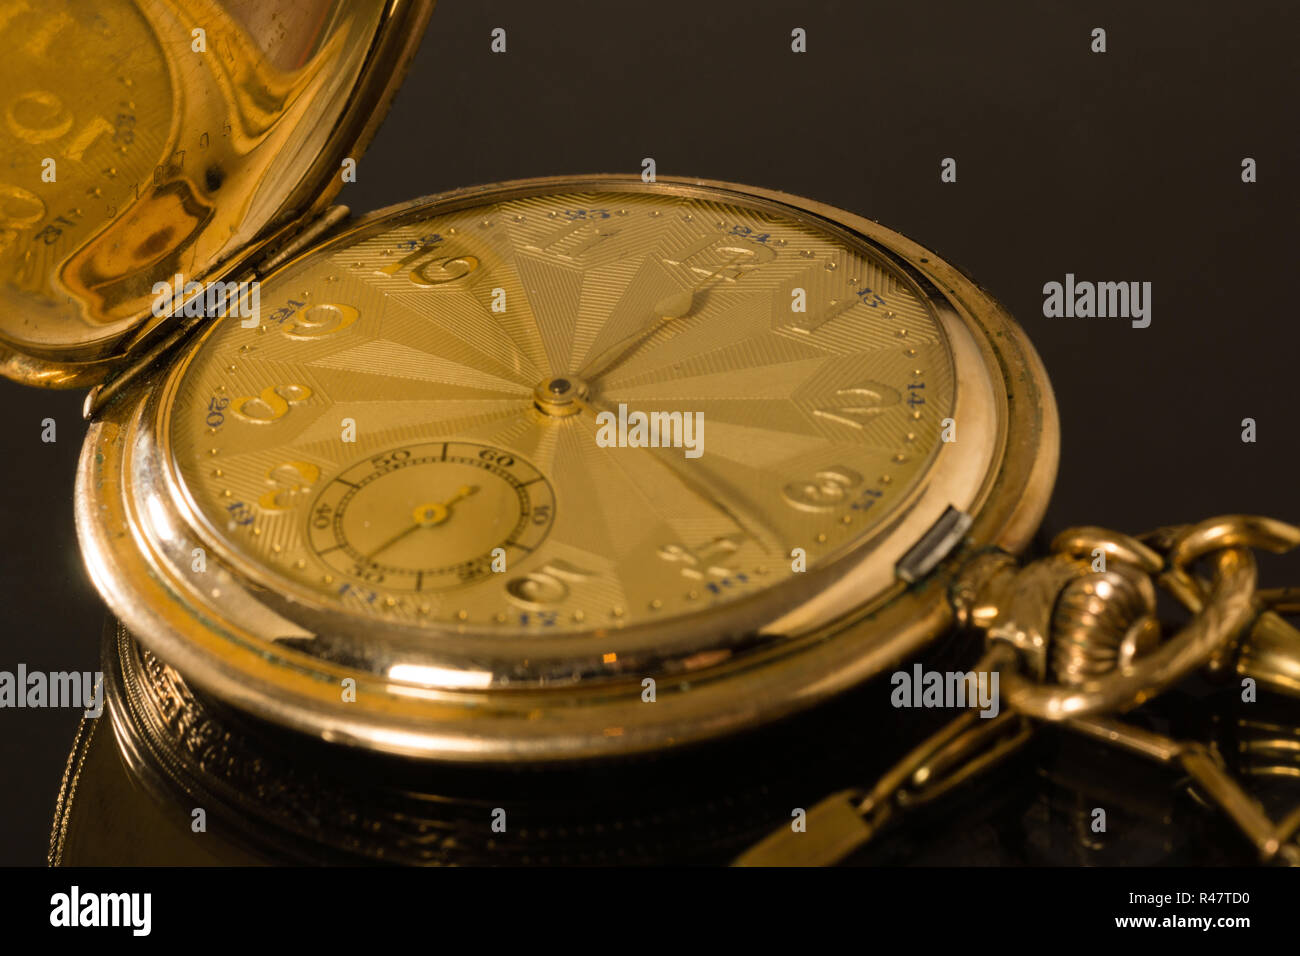 reloj de bolsillo Foto de stock